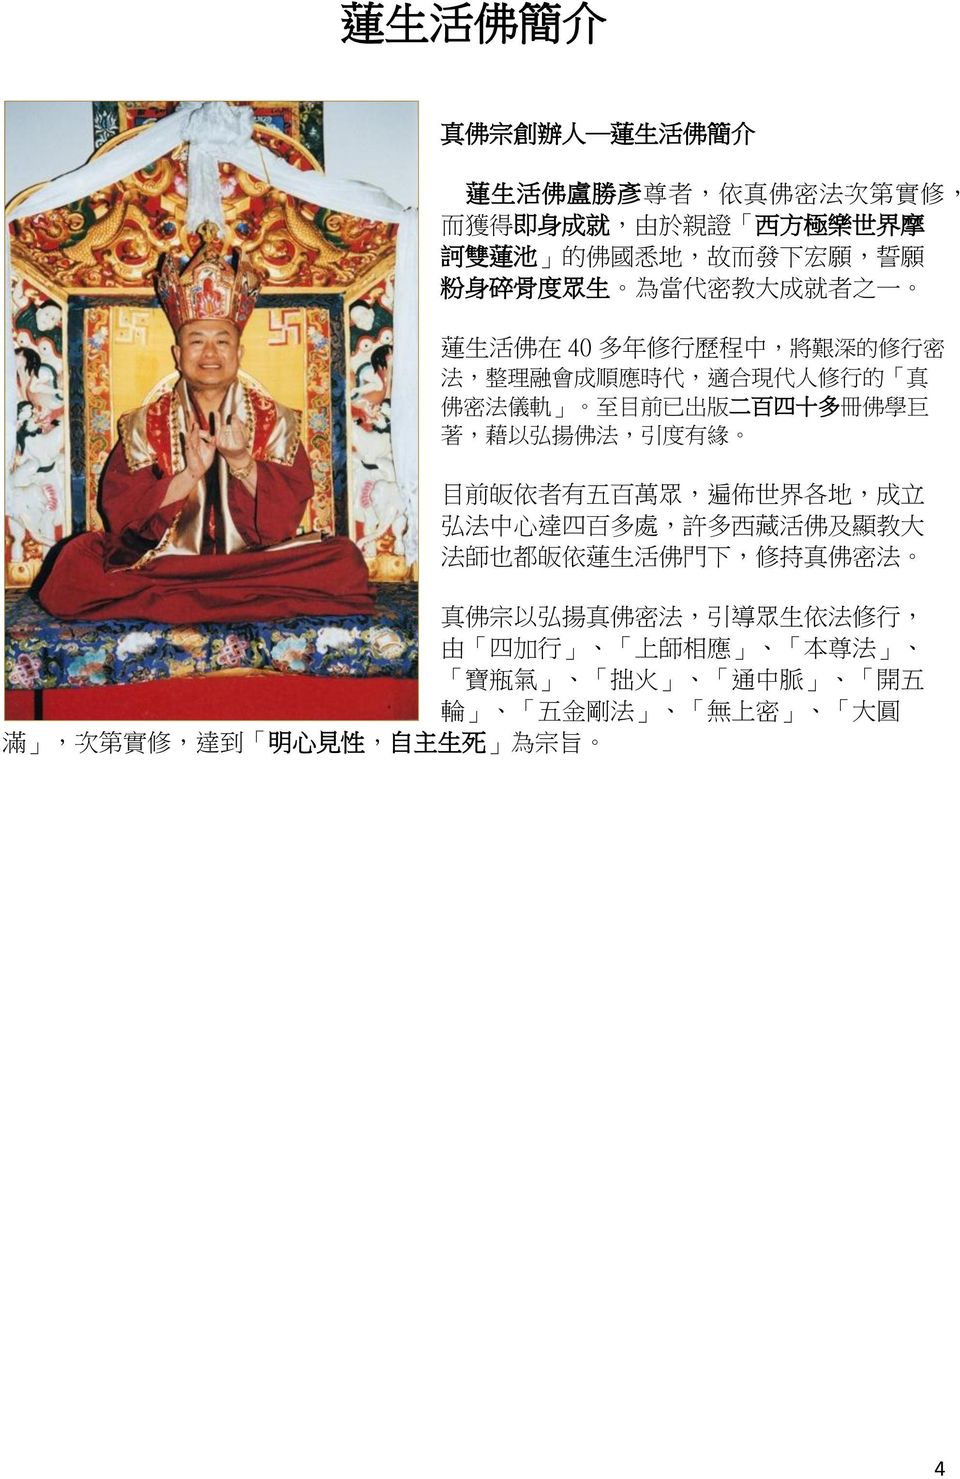 四 十 多 冊 佛 學 巨 著, 藉 以 弘 揚 佛 法, 引 度 有 緣 目 前 皈 依 者 有 五 百 萬 眾, 遍 佈 世 界 各 地, 成 立 弘 法 中 心 達 四 百 多 處, 許 多 西 藏 活 佛 及 顯 教 大 法 師 也 都 皈 依 蓮 生 活 佛 門 下, 修 持 真